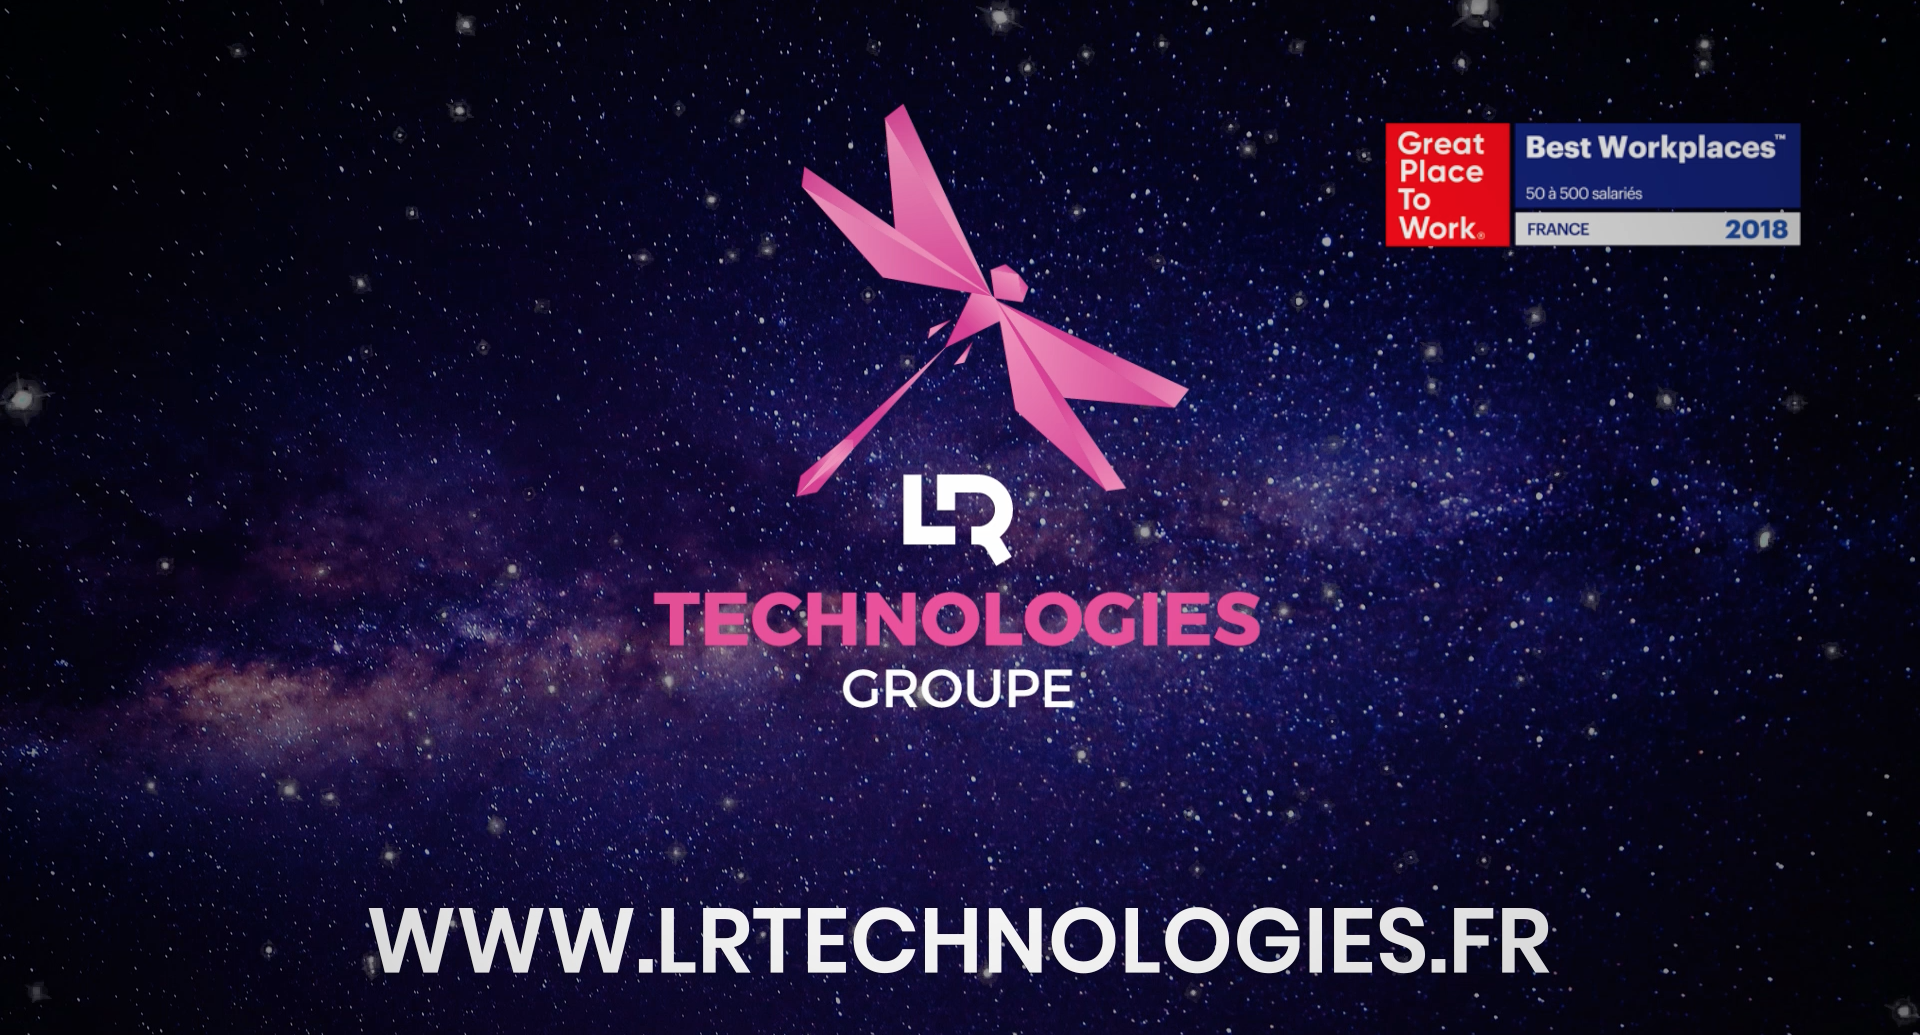 LR Technologies Groupe arrive dans vos cinémas